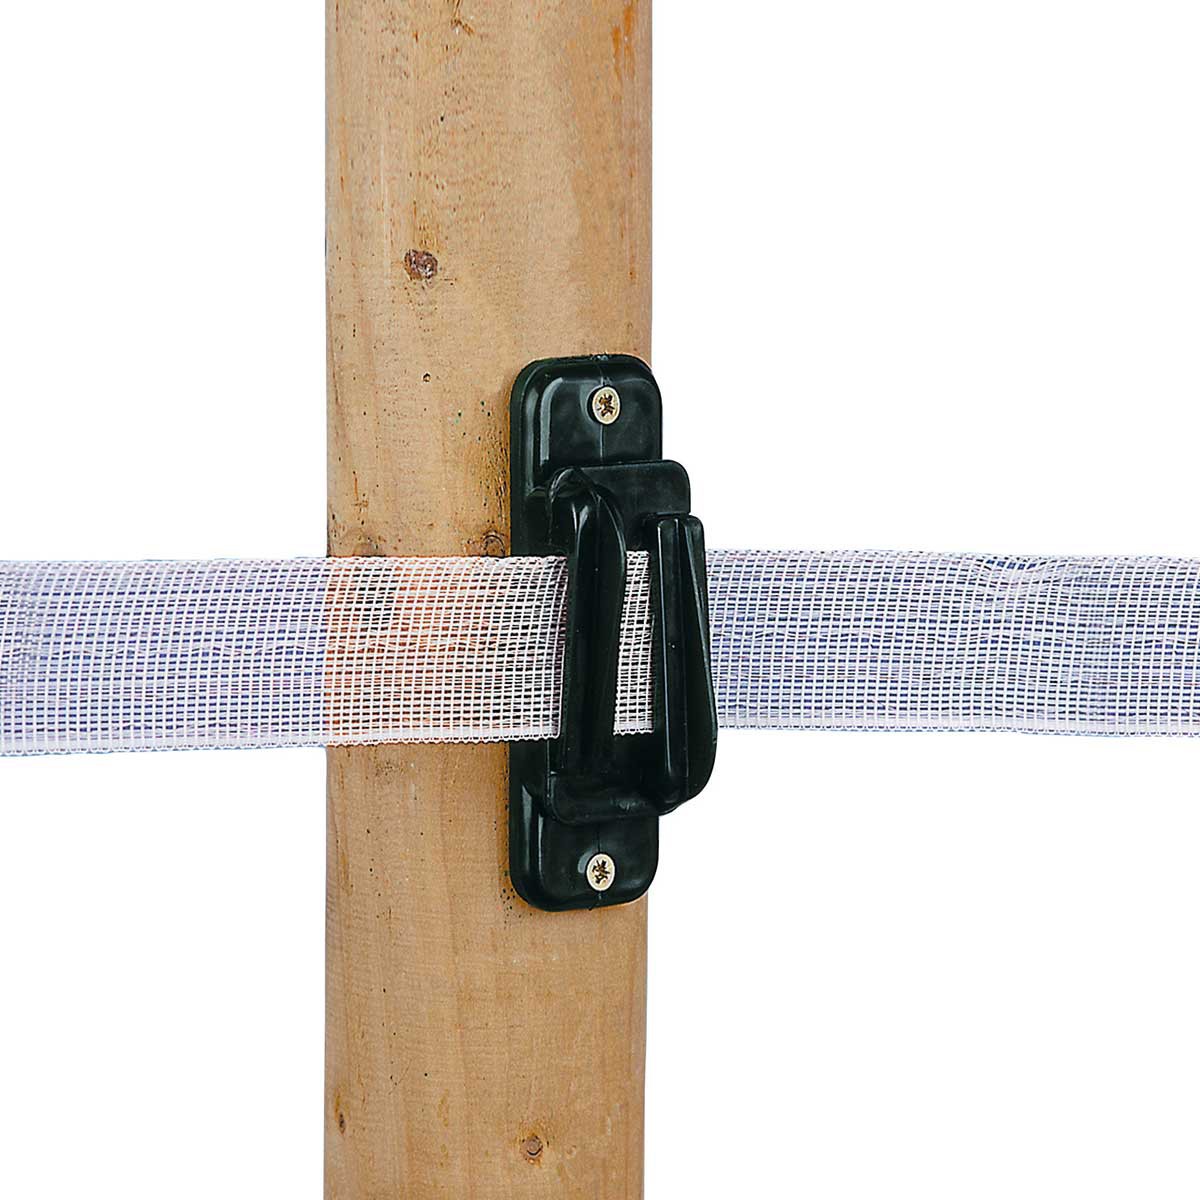 10x AKO Bredbandsisolator för band upp till 20 mm / rep / tråd